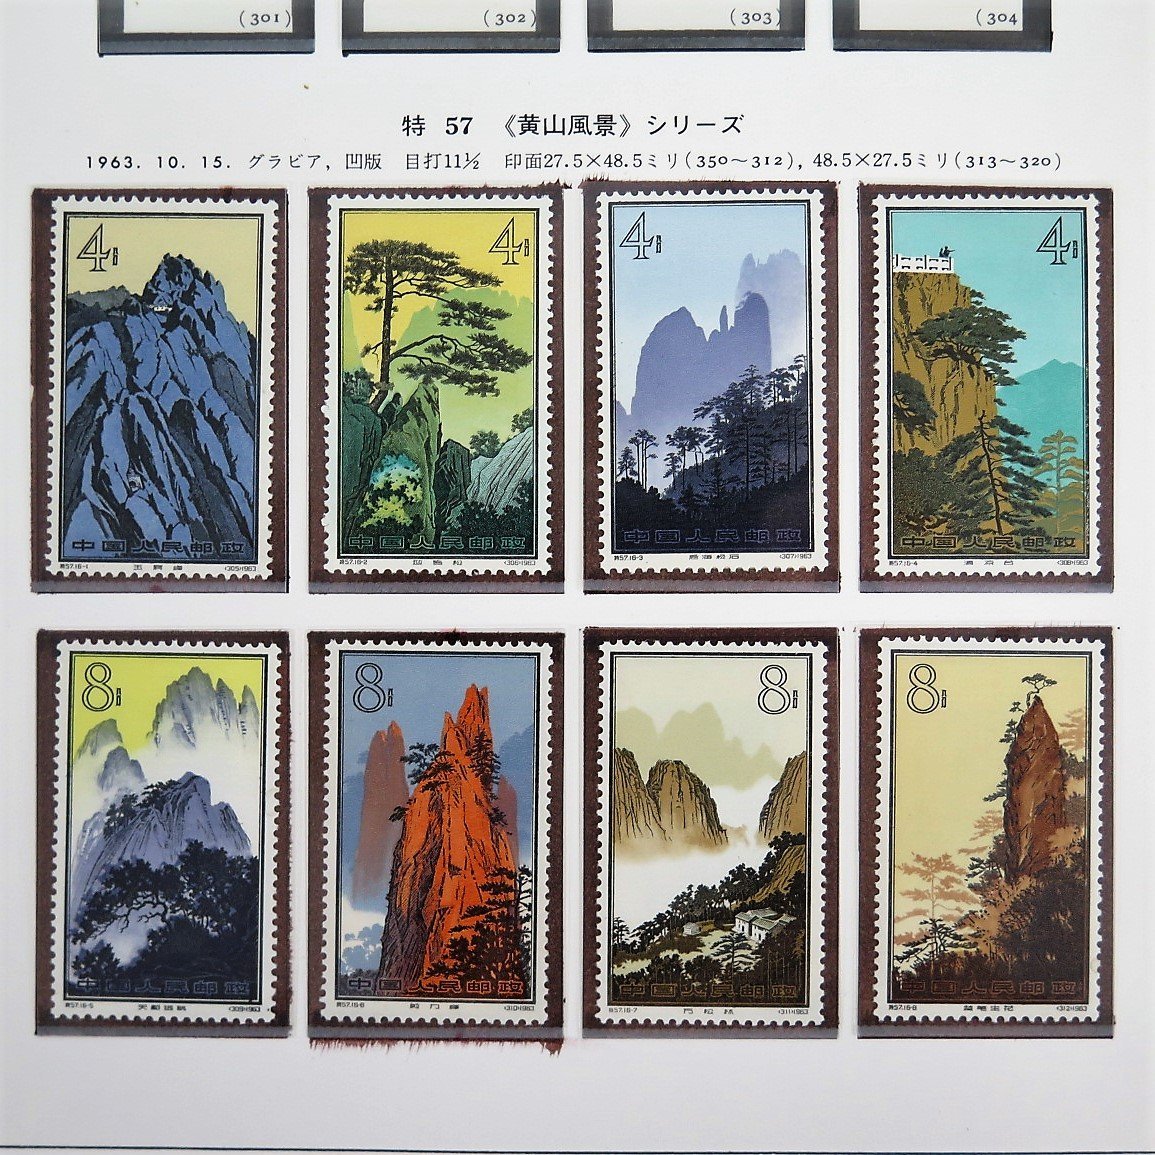 中国切手 特57 黄山風景シリーズ 13種 - 使用済切手/官製はがき